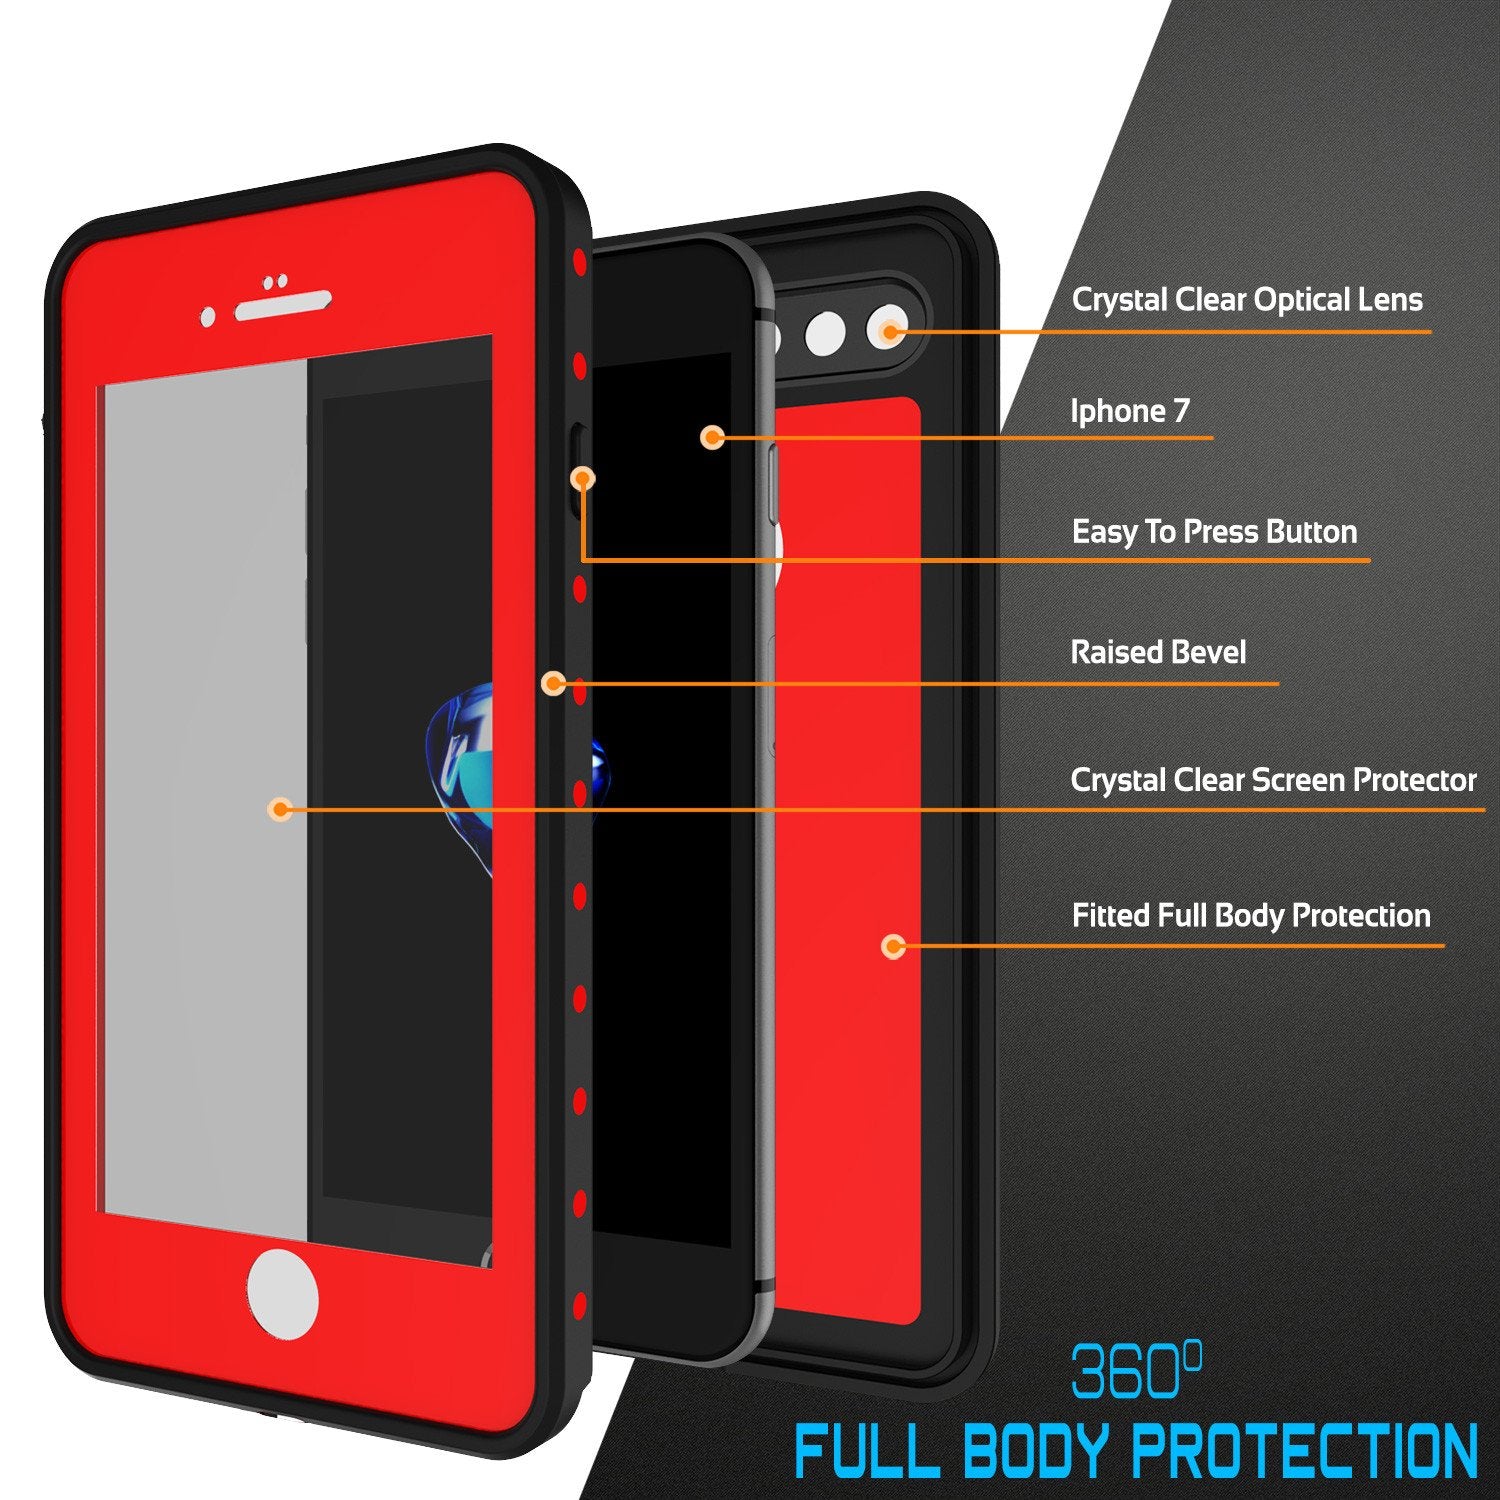 iPhone 7+ Plus Waterproof IP68 Case, Punkcase [Red] [StudStar Series] [Slim Fit] [Dirtproof]